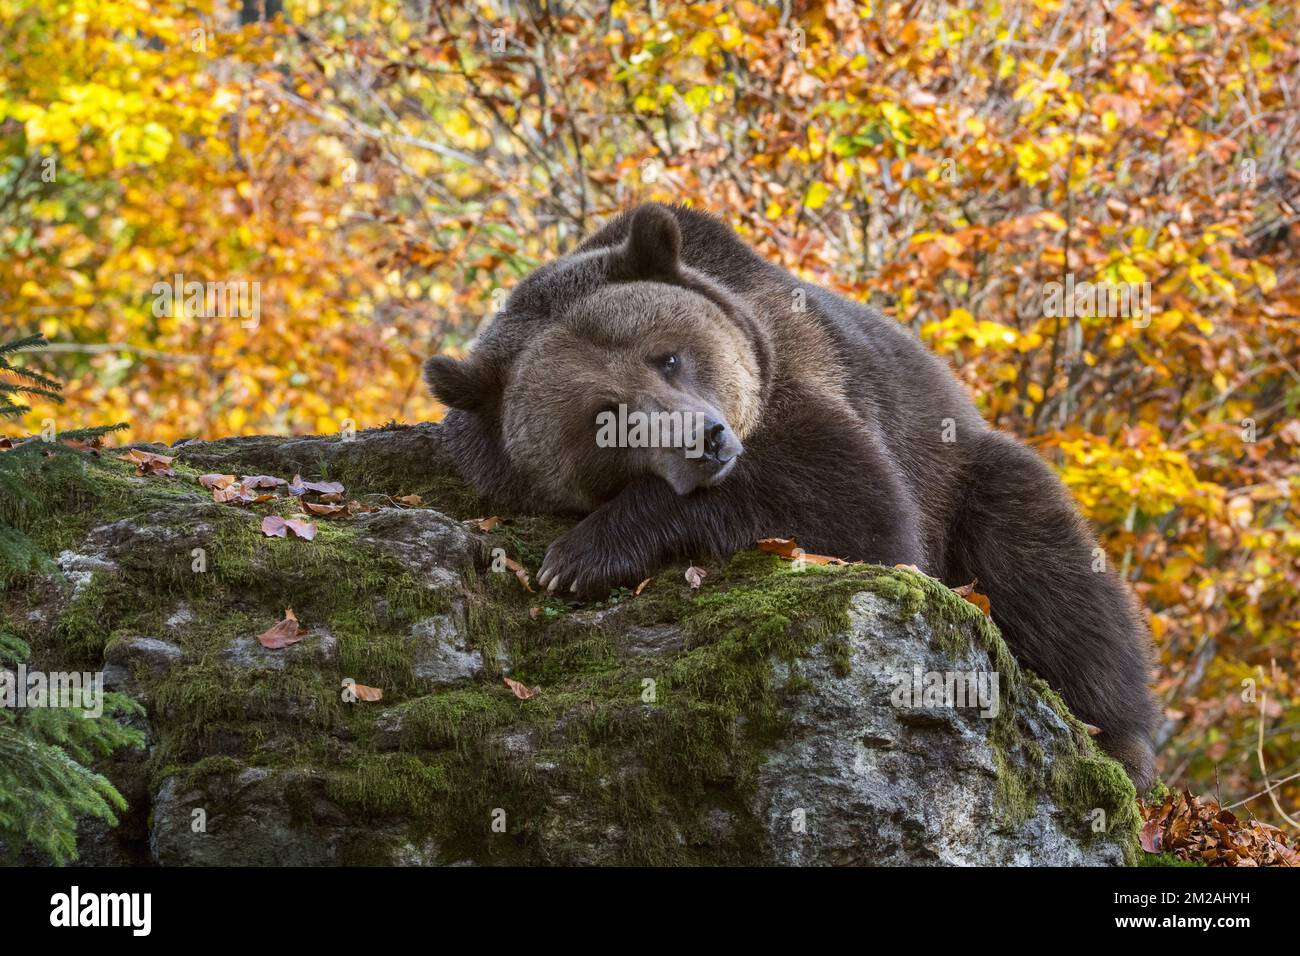 Orso bruno europeo (Ursus arctos arctos) che riposa sulla roccia nella foresta con il fogliame che mostra i colori autunnali | Ours brun d'Europe (Ursus arctos arctos) 18/10/2017 Foto Stock